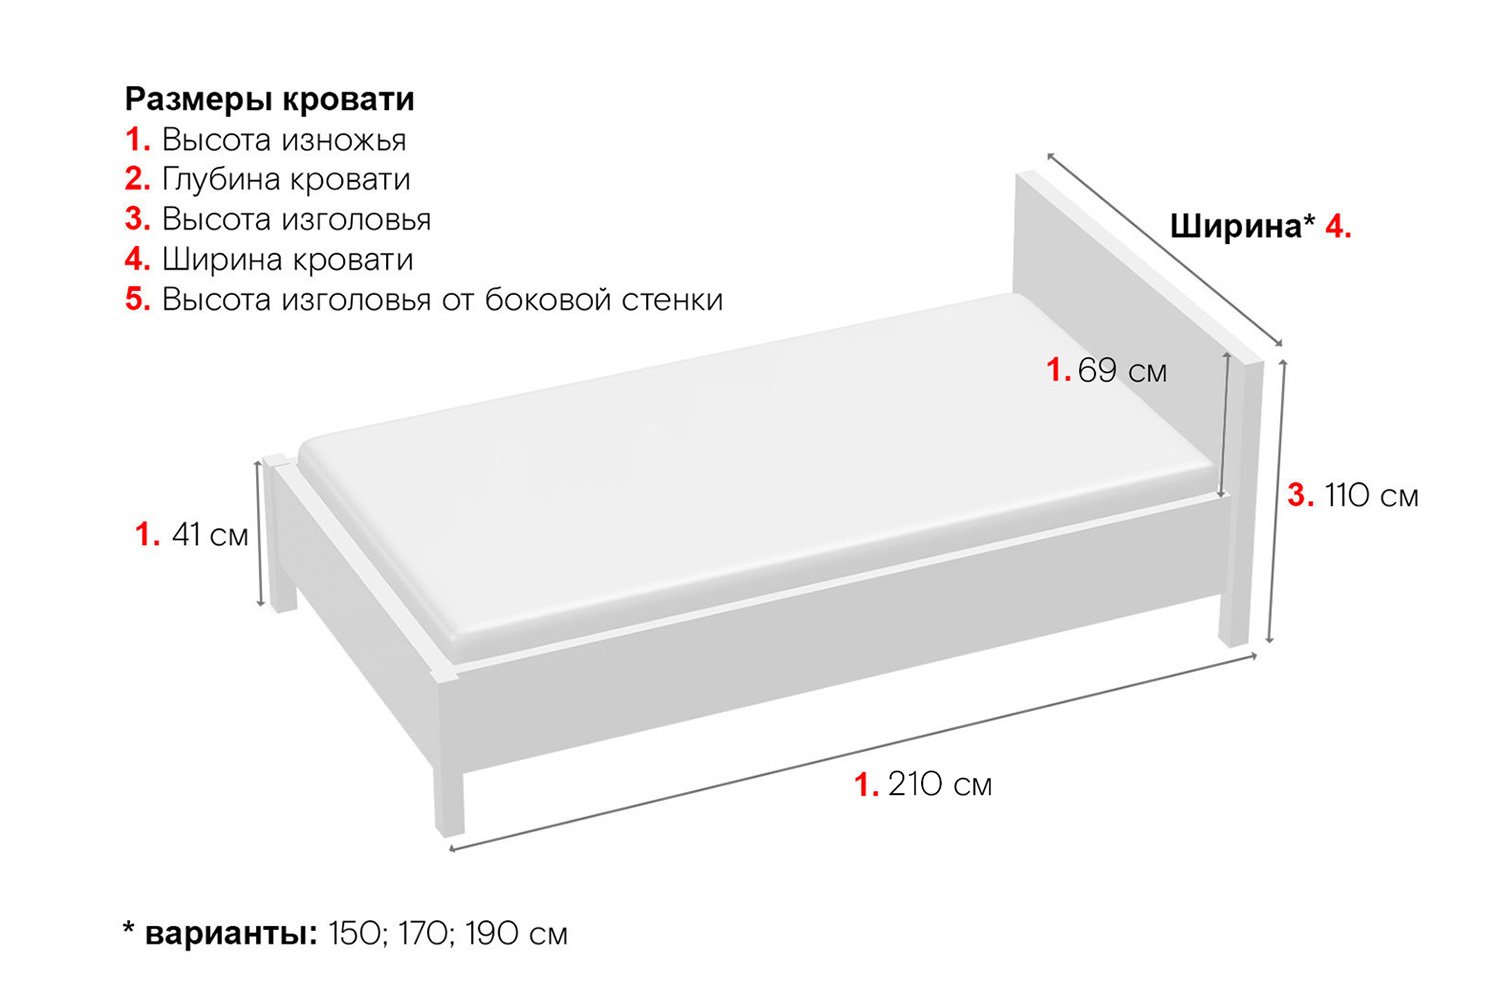 размер полуторной кровати стандарт в см в россии